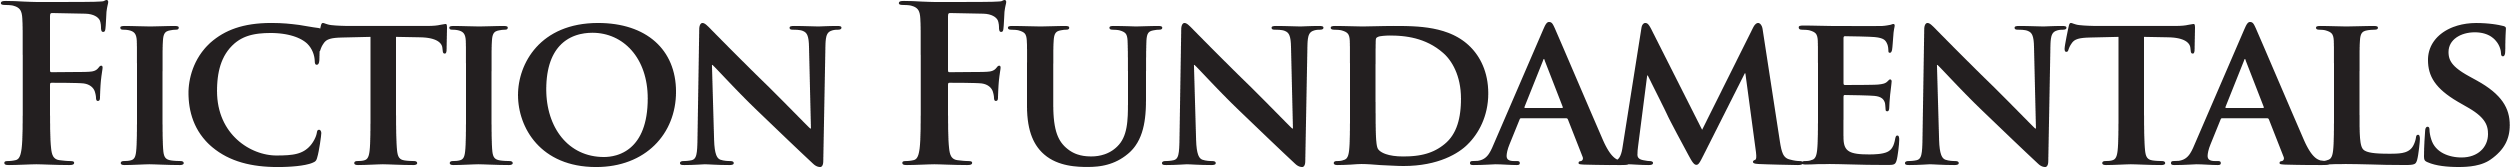 Fiction Fundamentals Logo